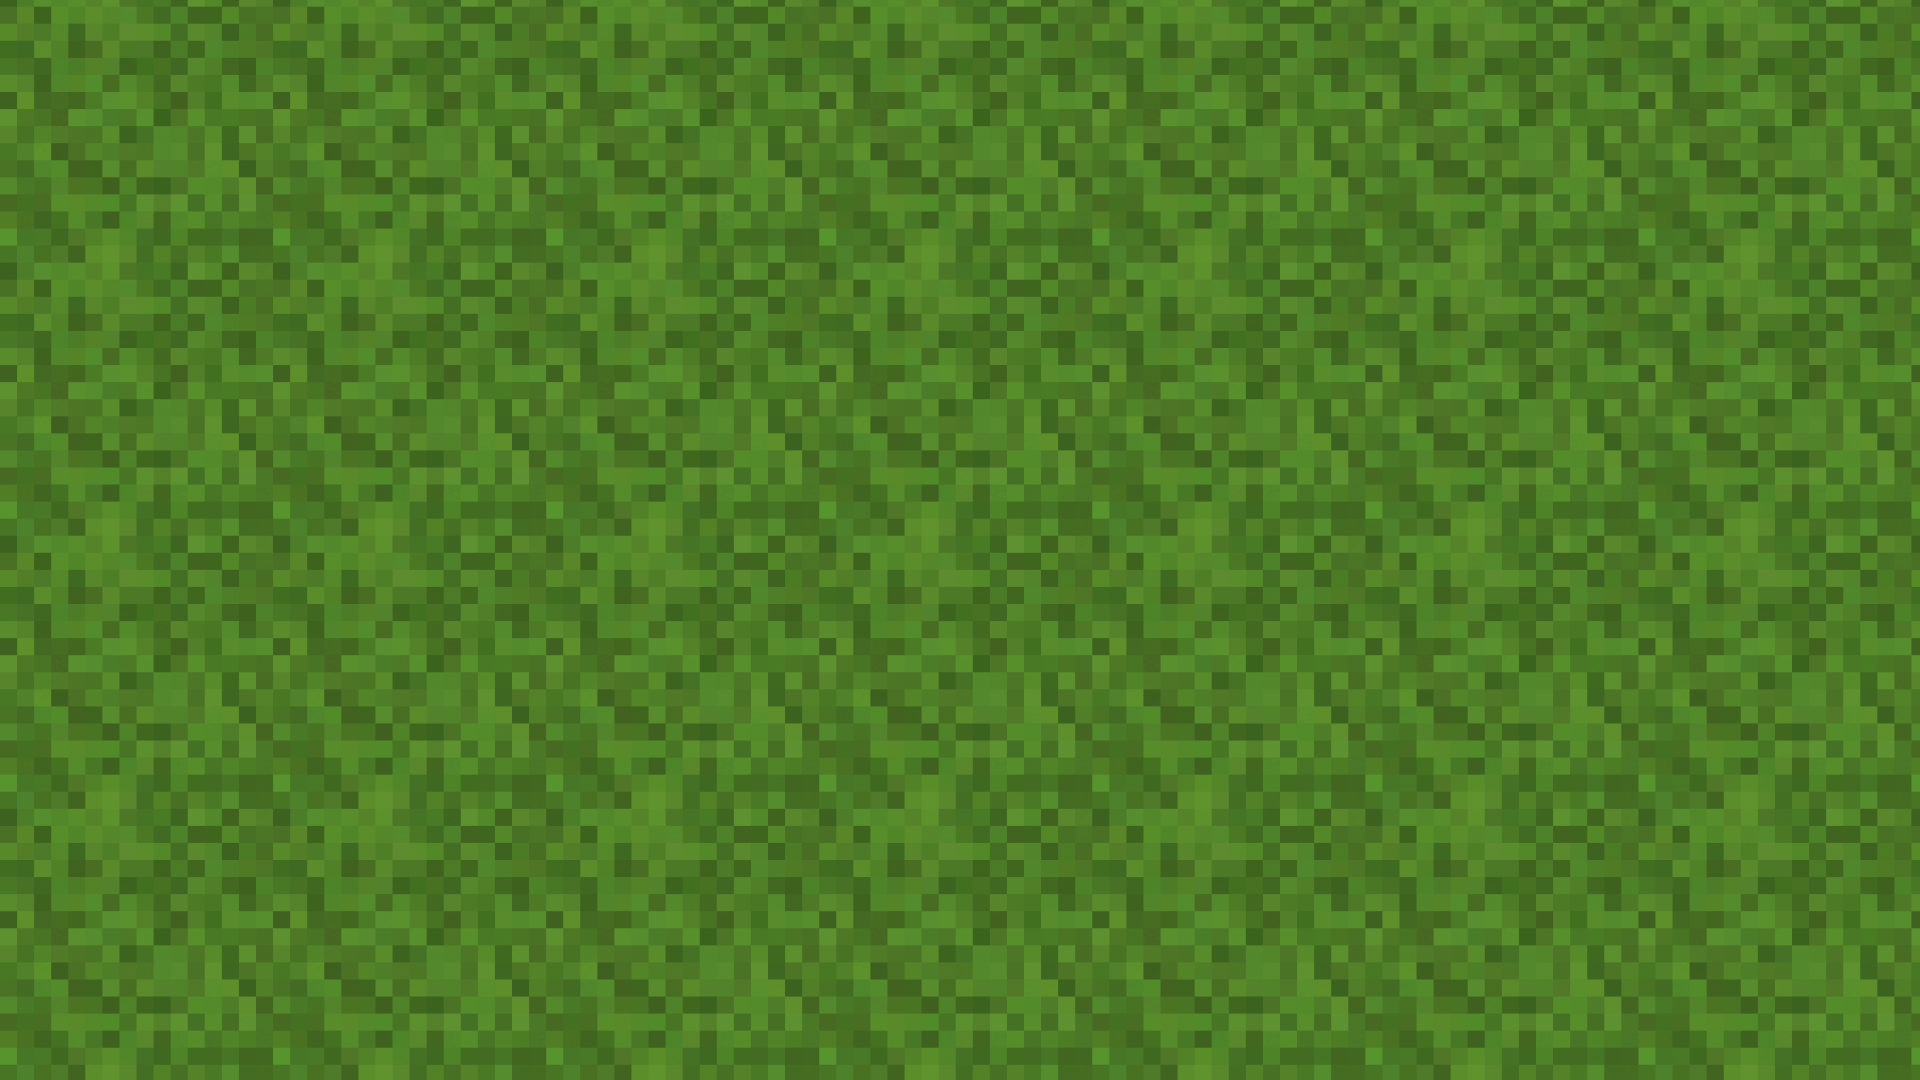 minecraft grass backgrounds